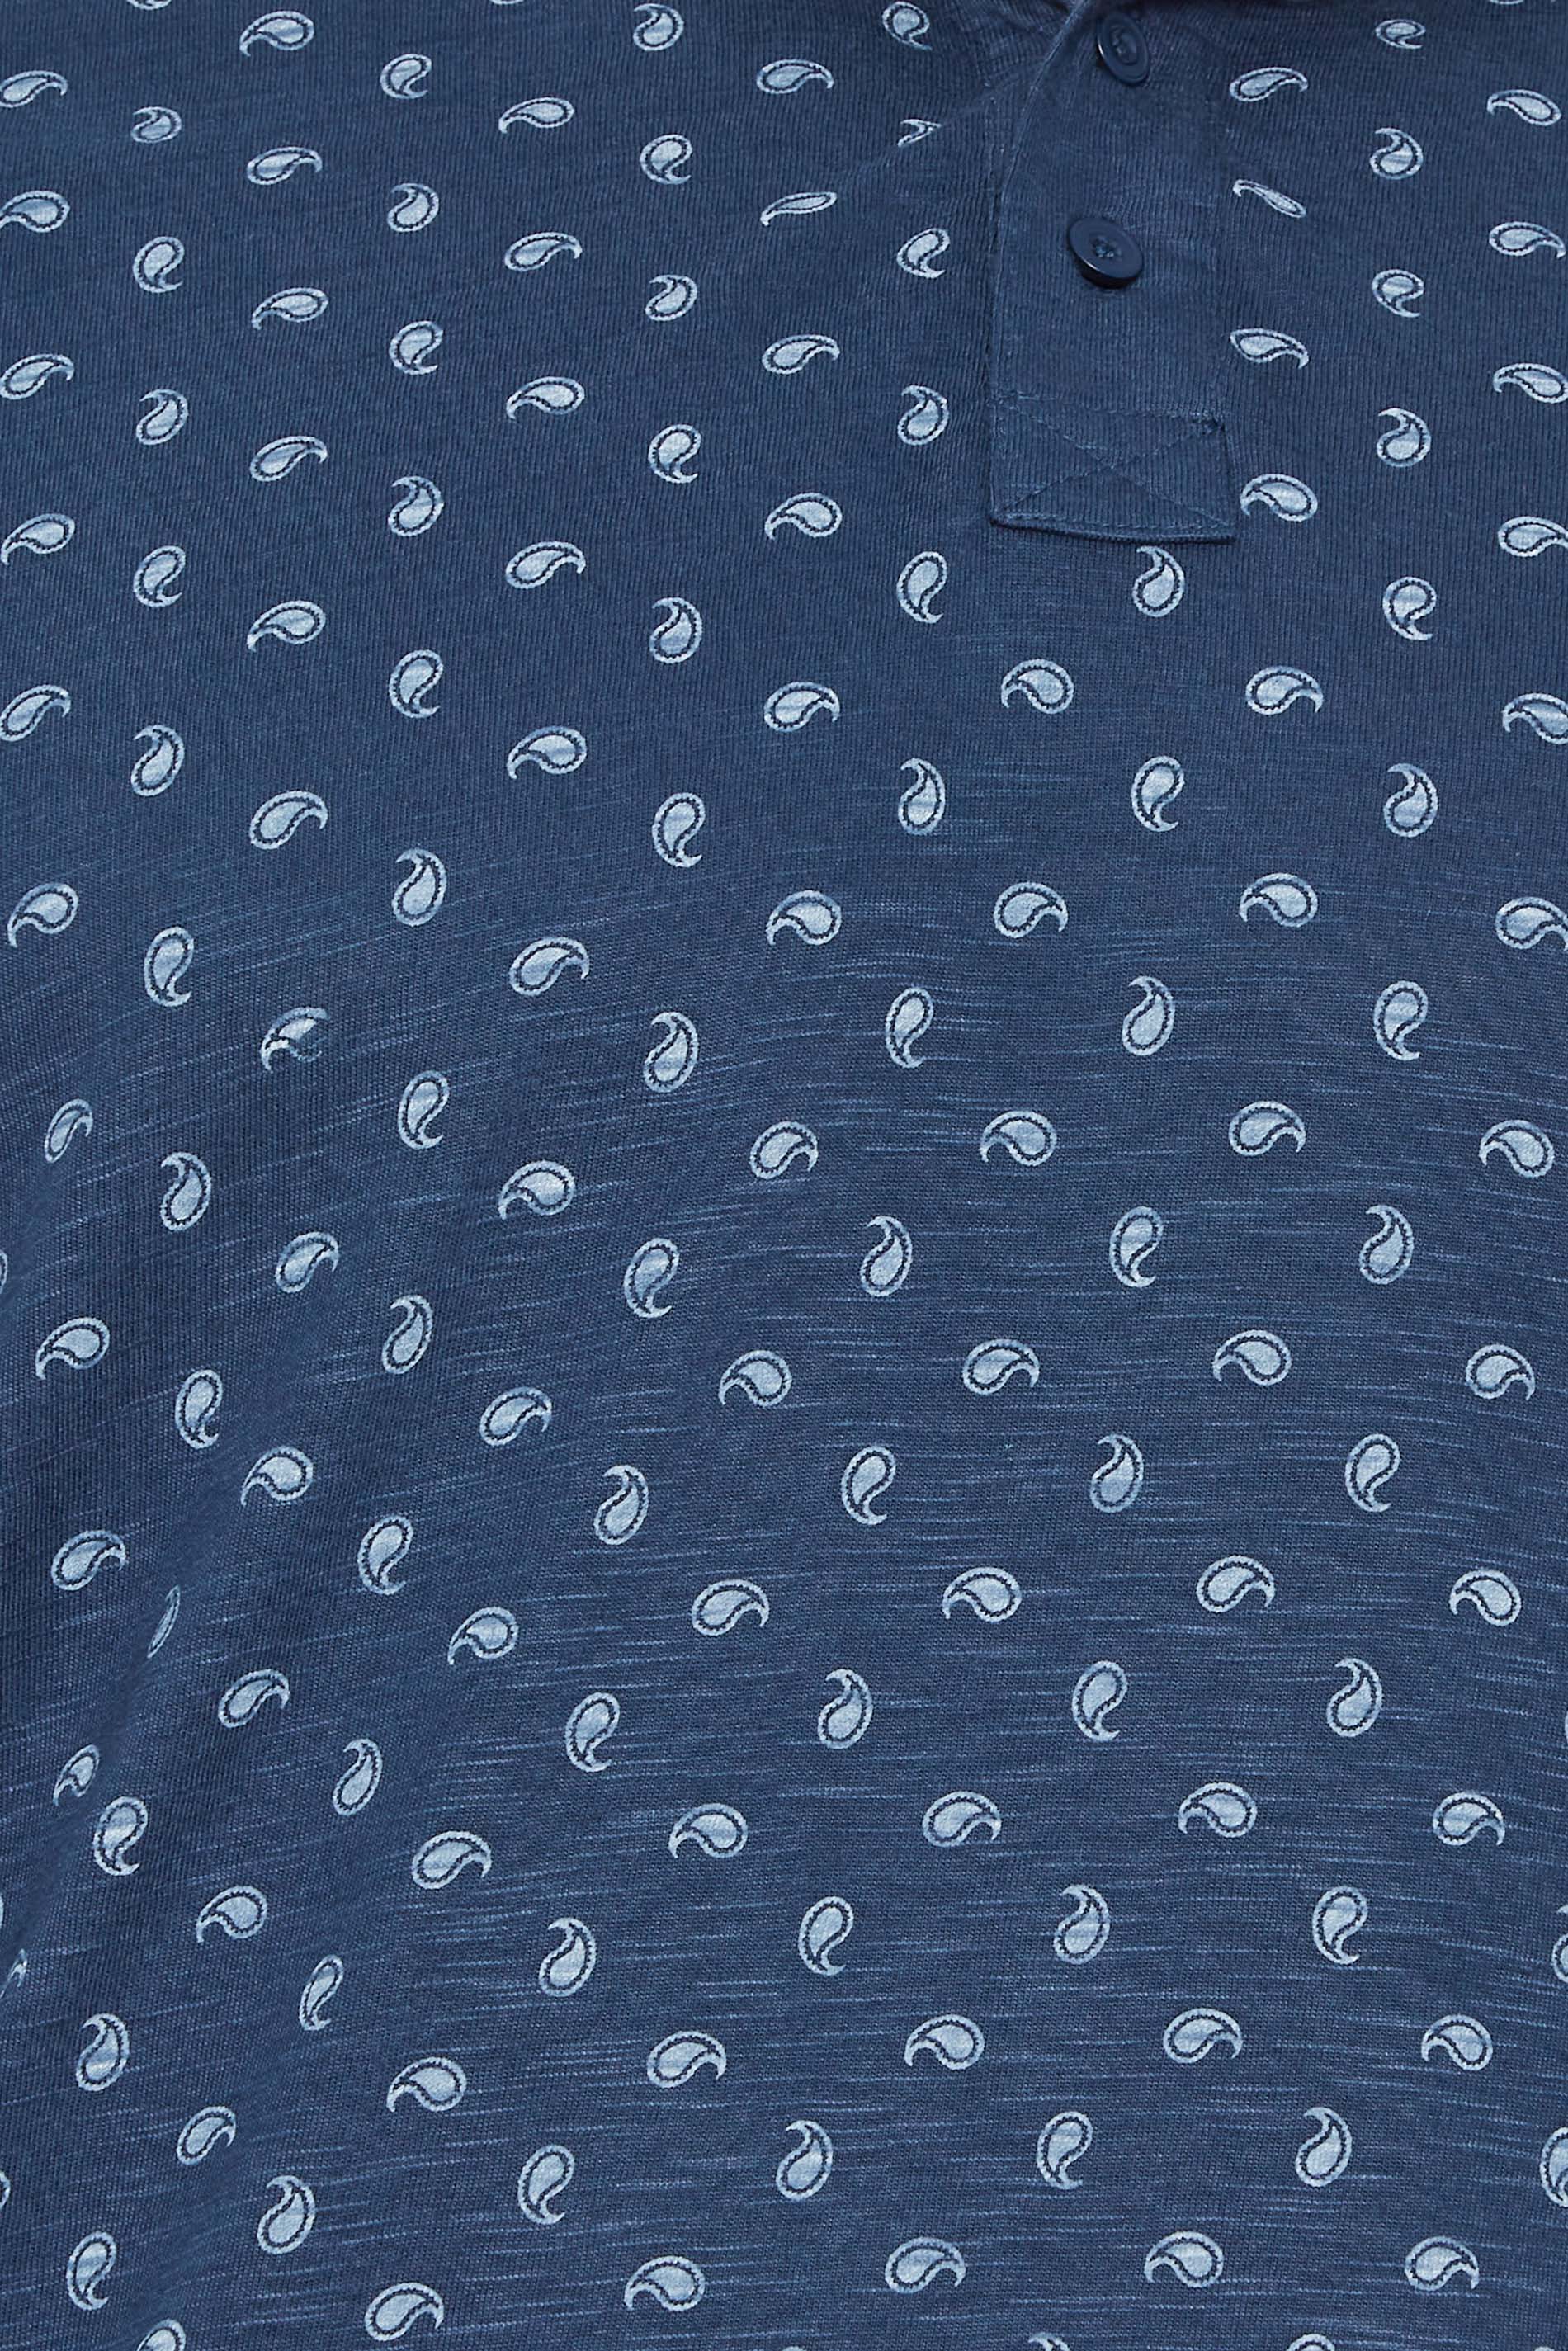 BadRhino Big & Tall Navy Blue Shell Print Polo Shirt | BadRhino 3